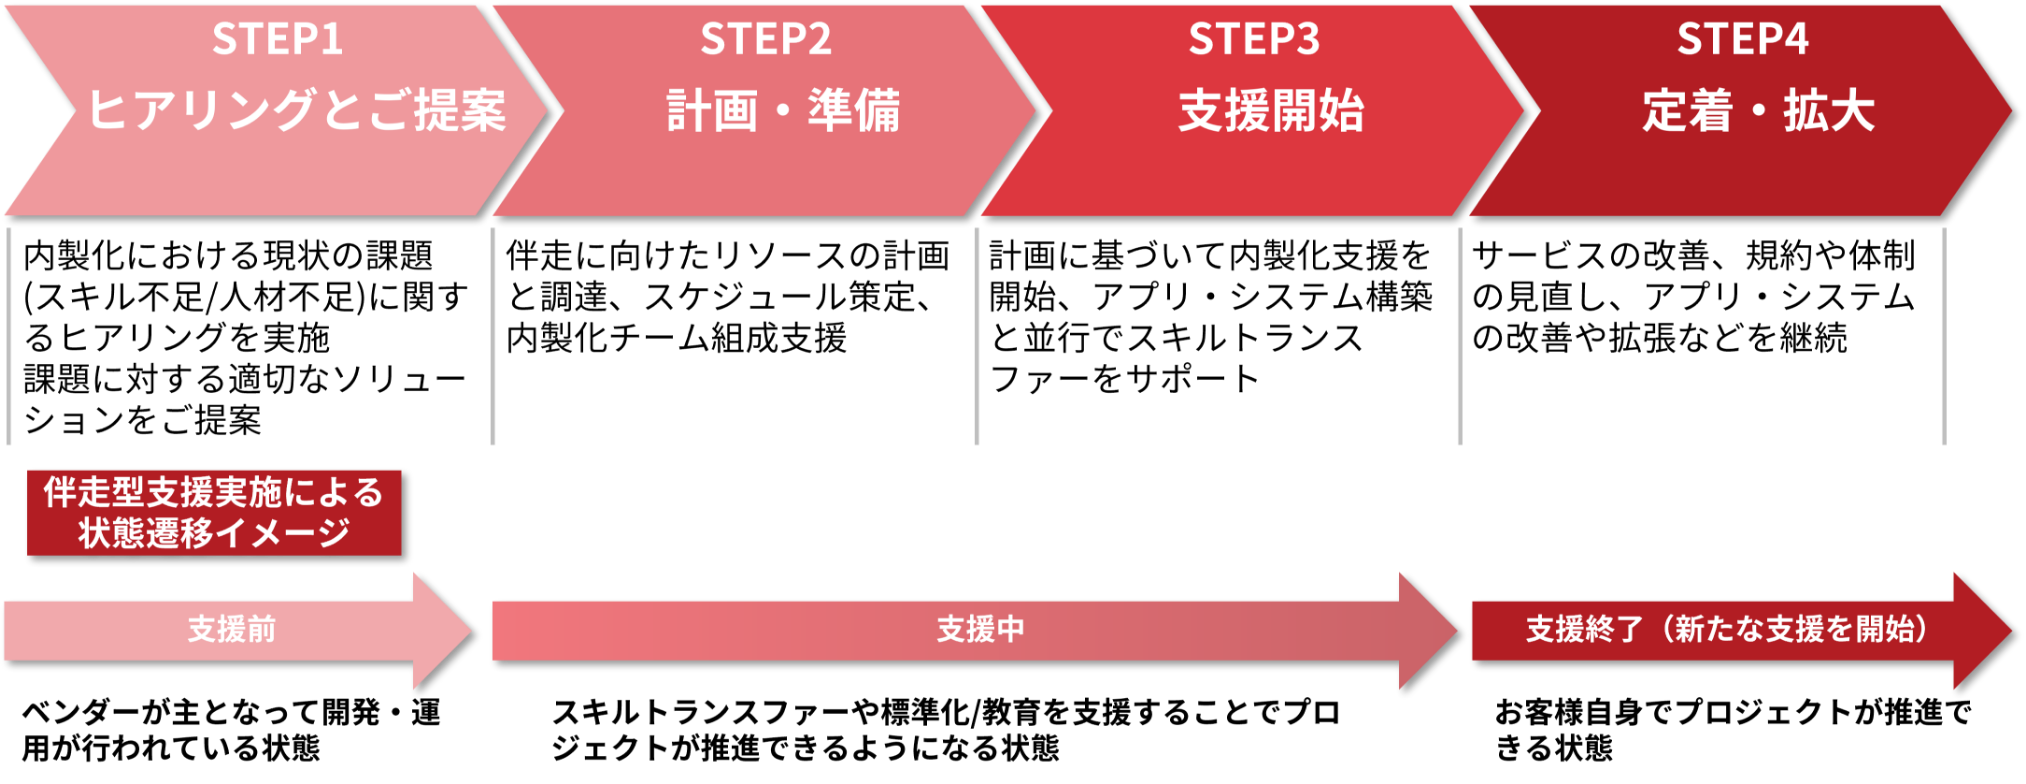 内製化導入支援の4ステップ